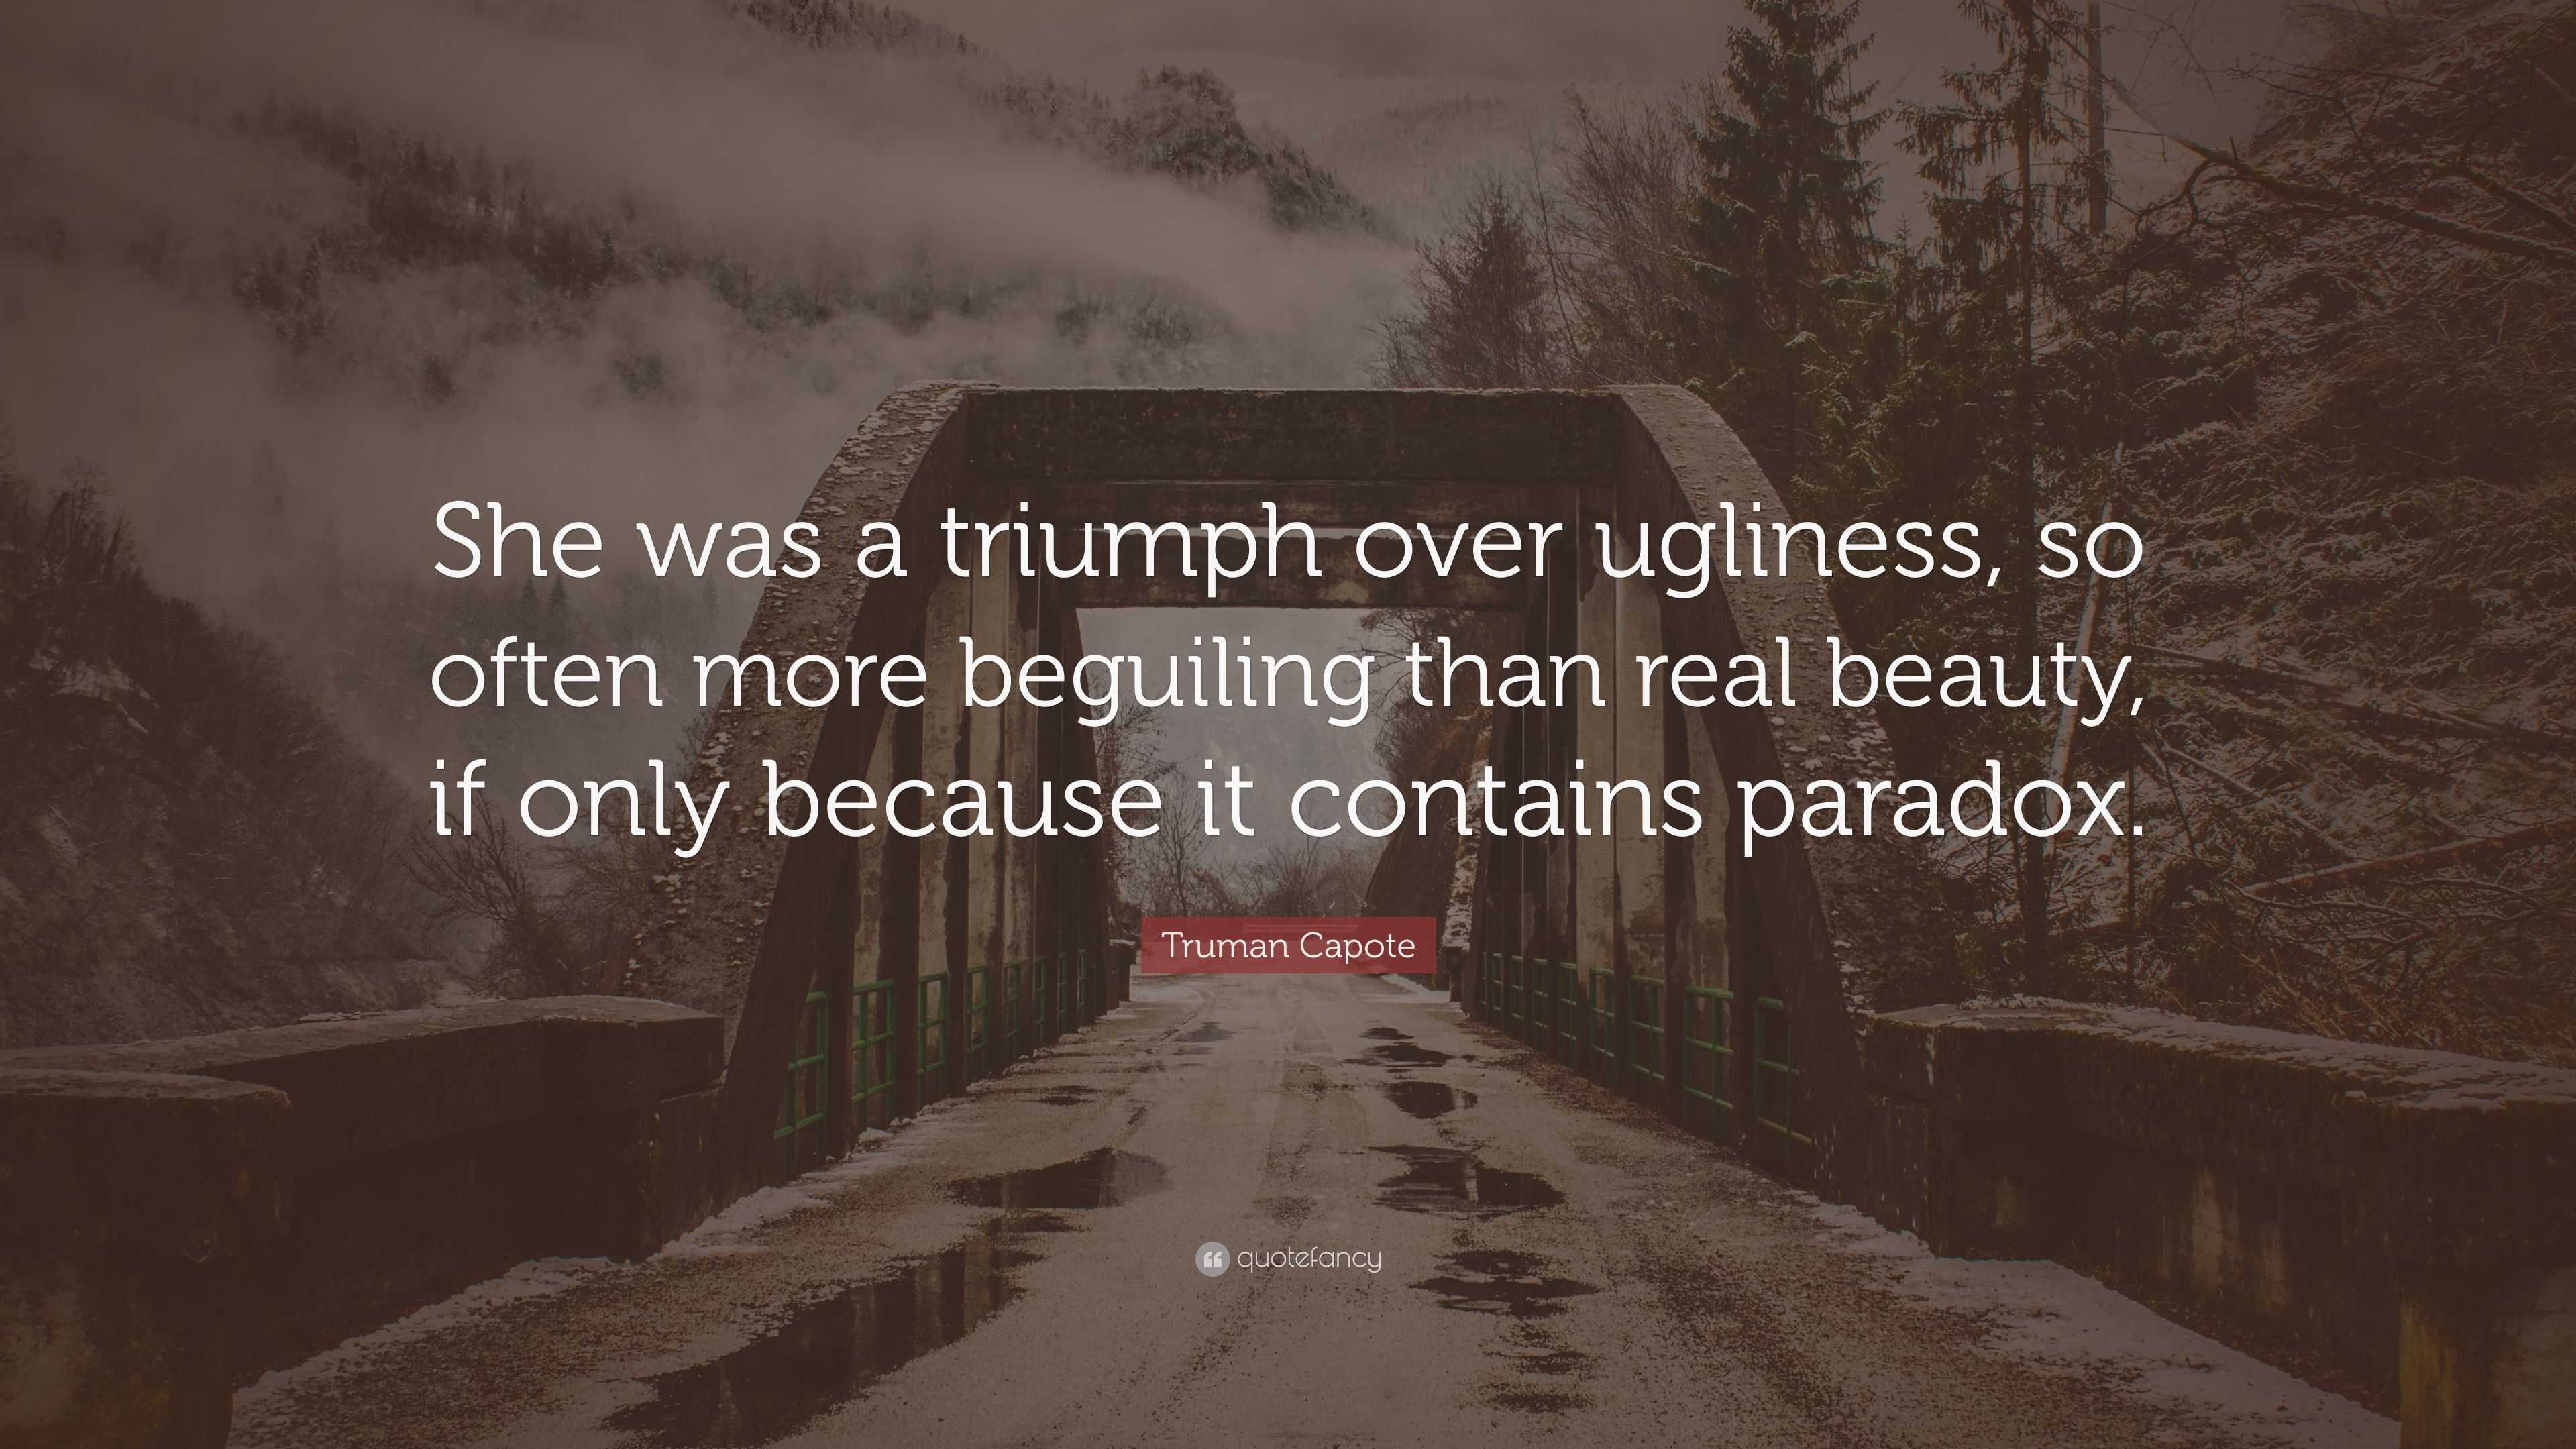 Truman Capote Quote: “She was a triumph over ugliness, so often more ...